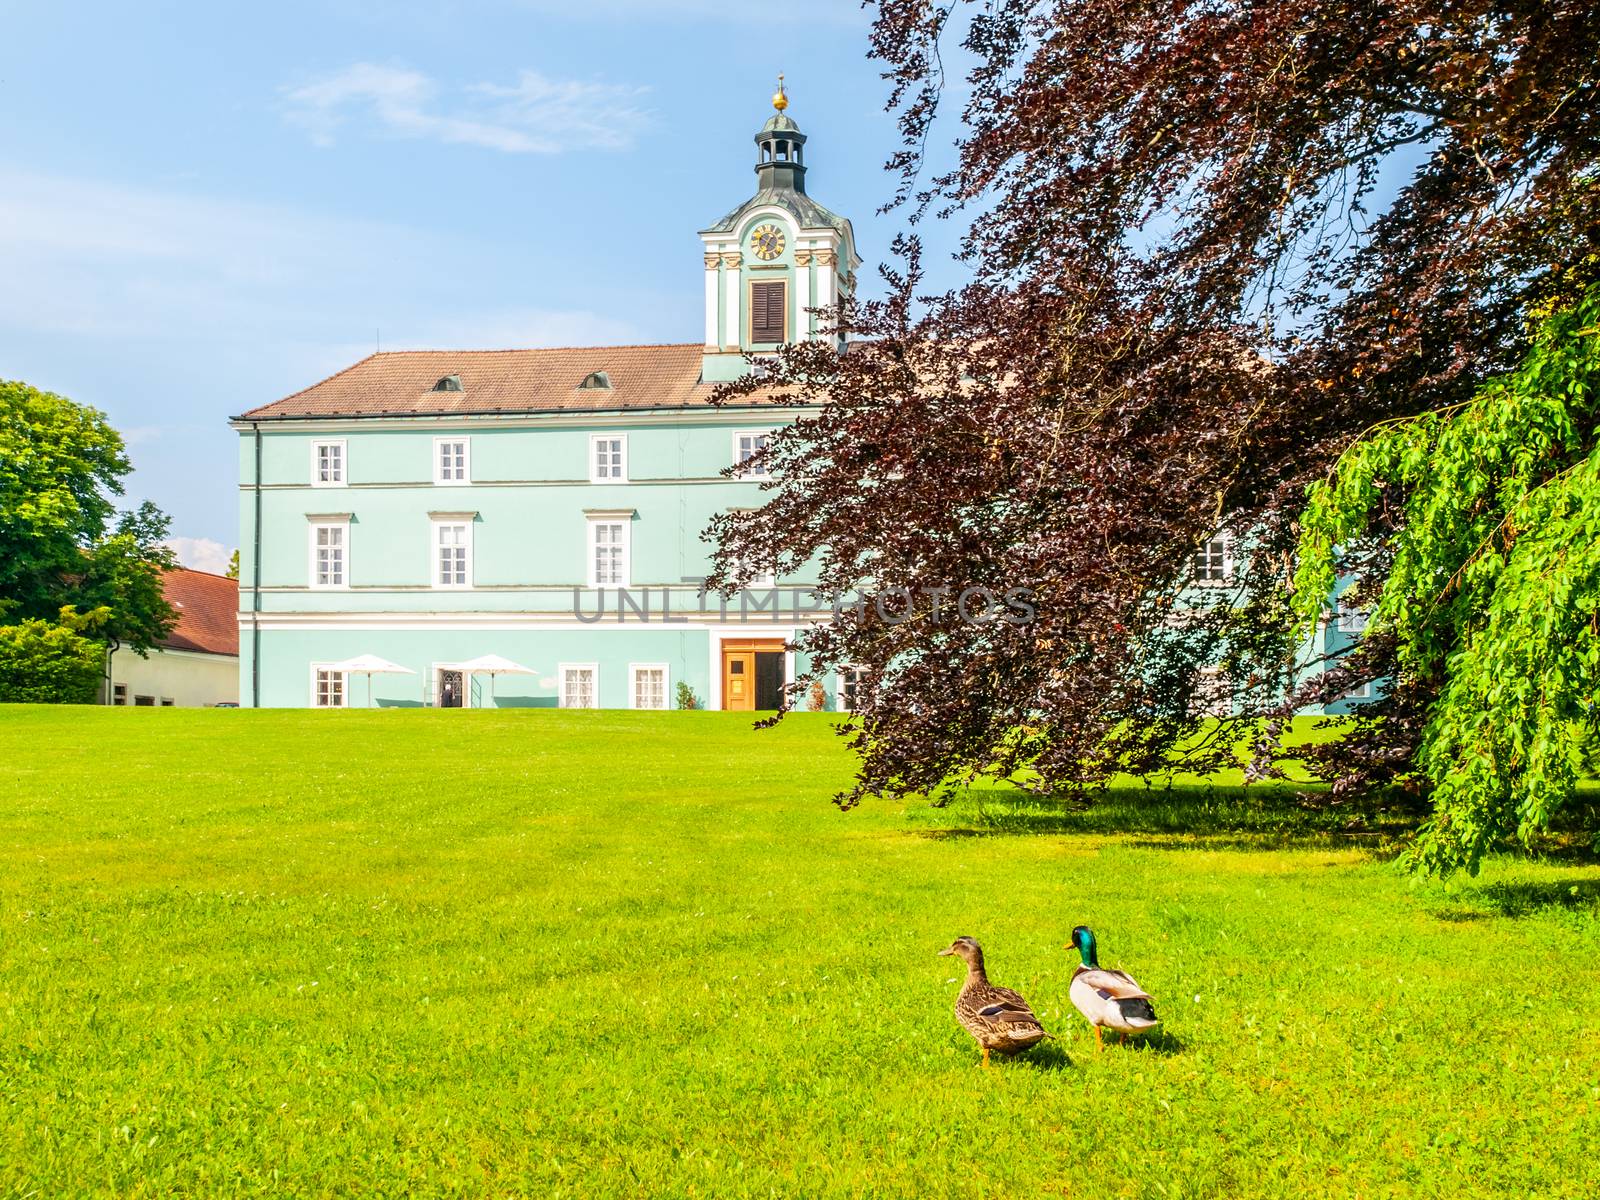 Park and renaissance chateau in Dacice, Czech Republic.